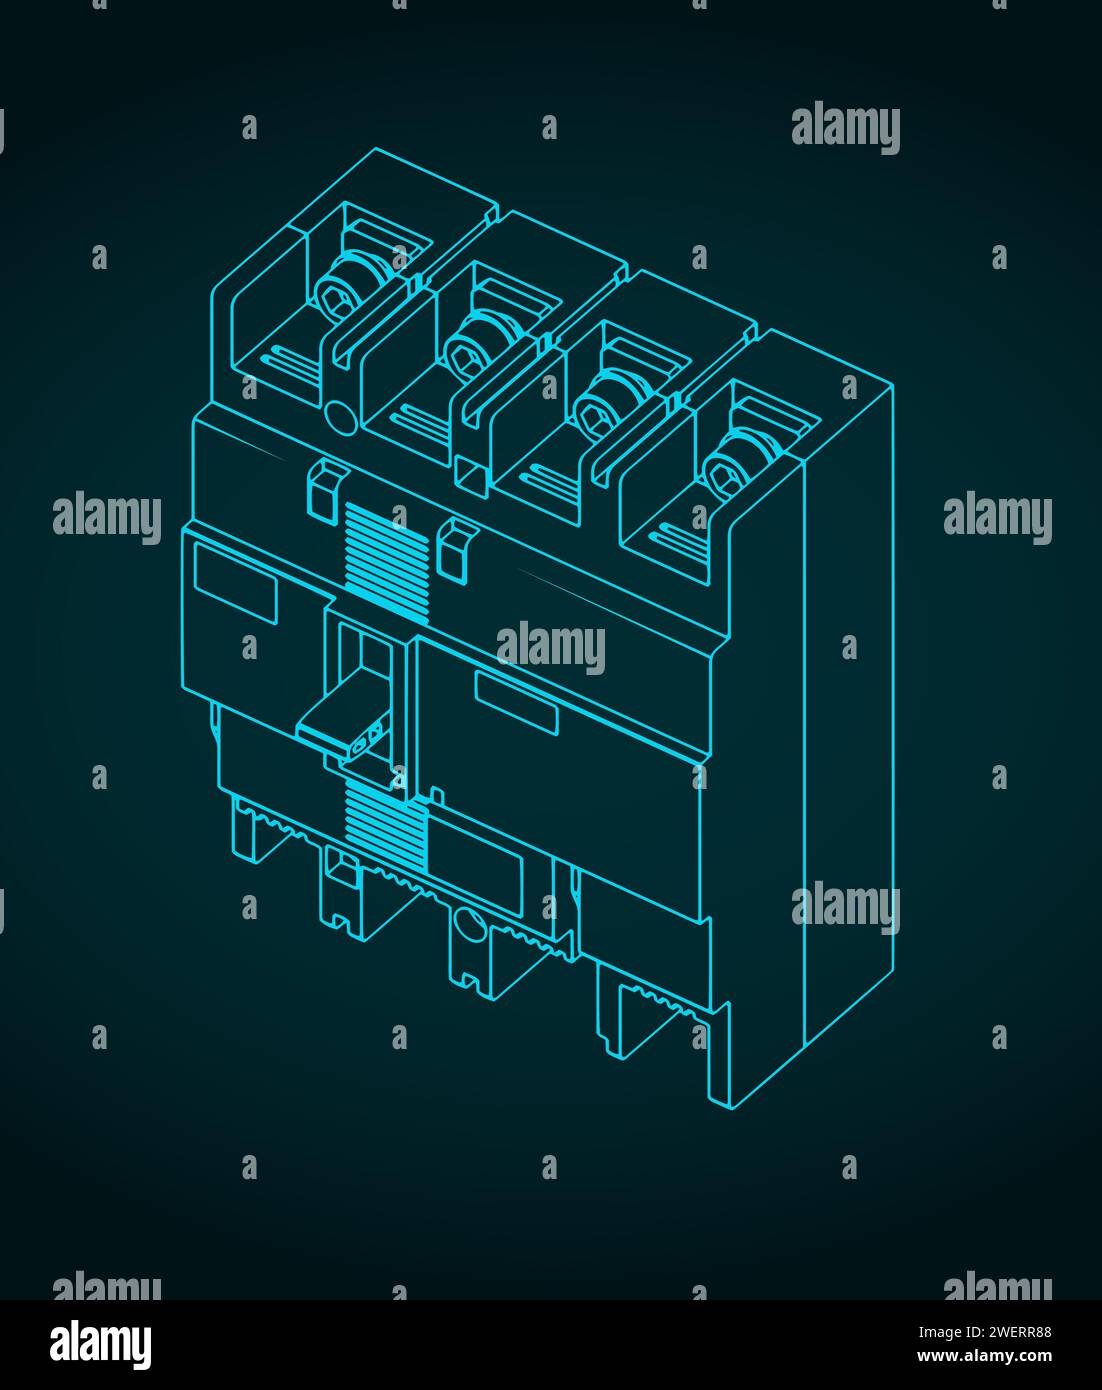 Illustrazione vettoriale stilizzata del progetto di un interruttore automatico Illustrazione Vettoriale